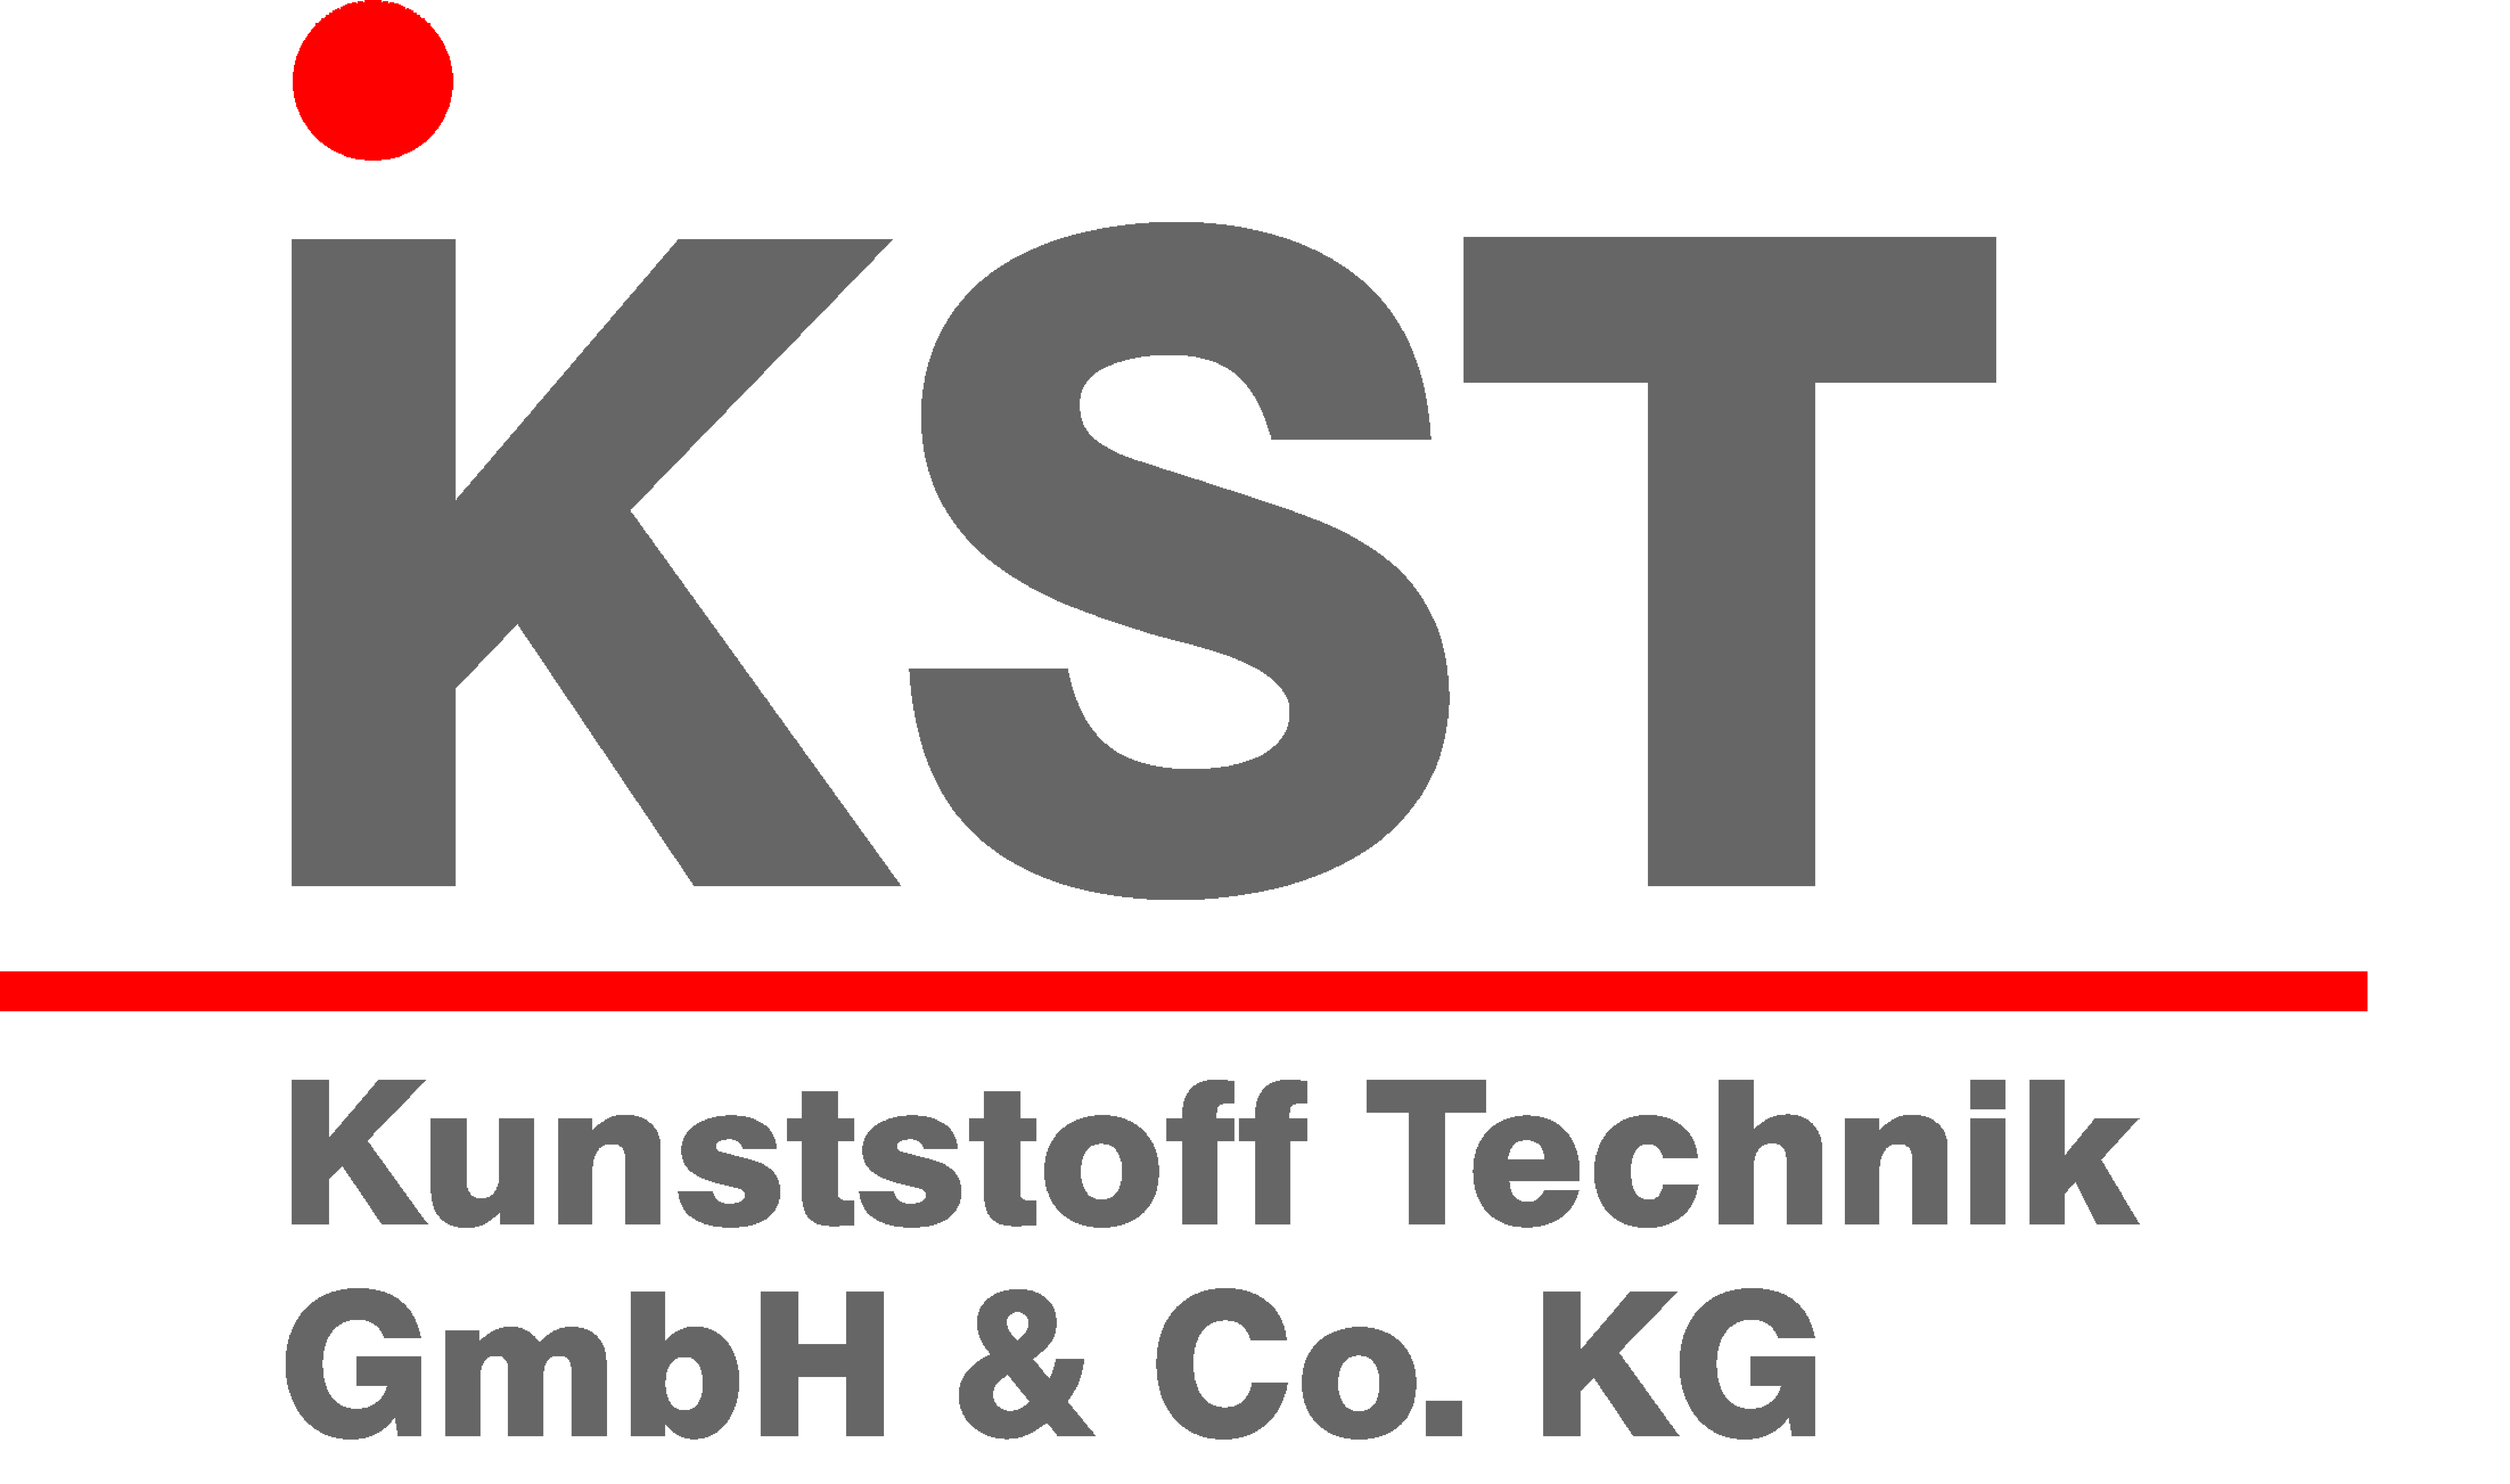 KST logo